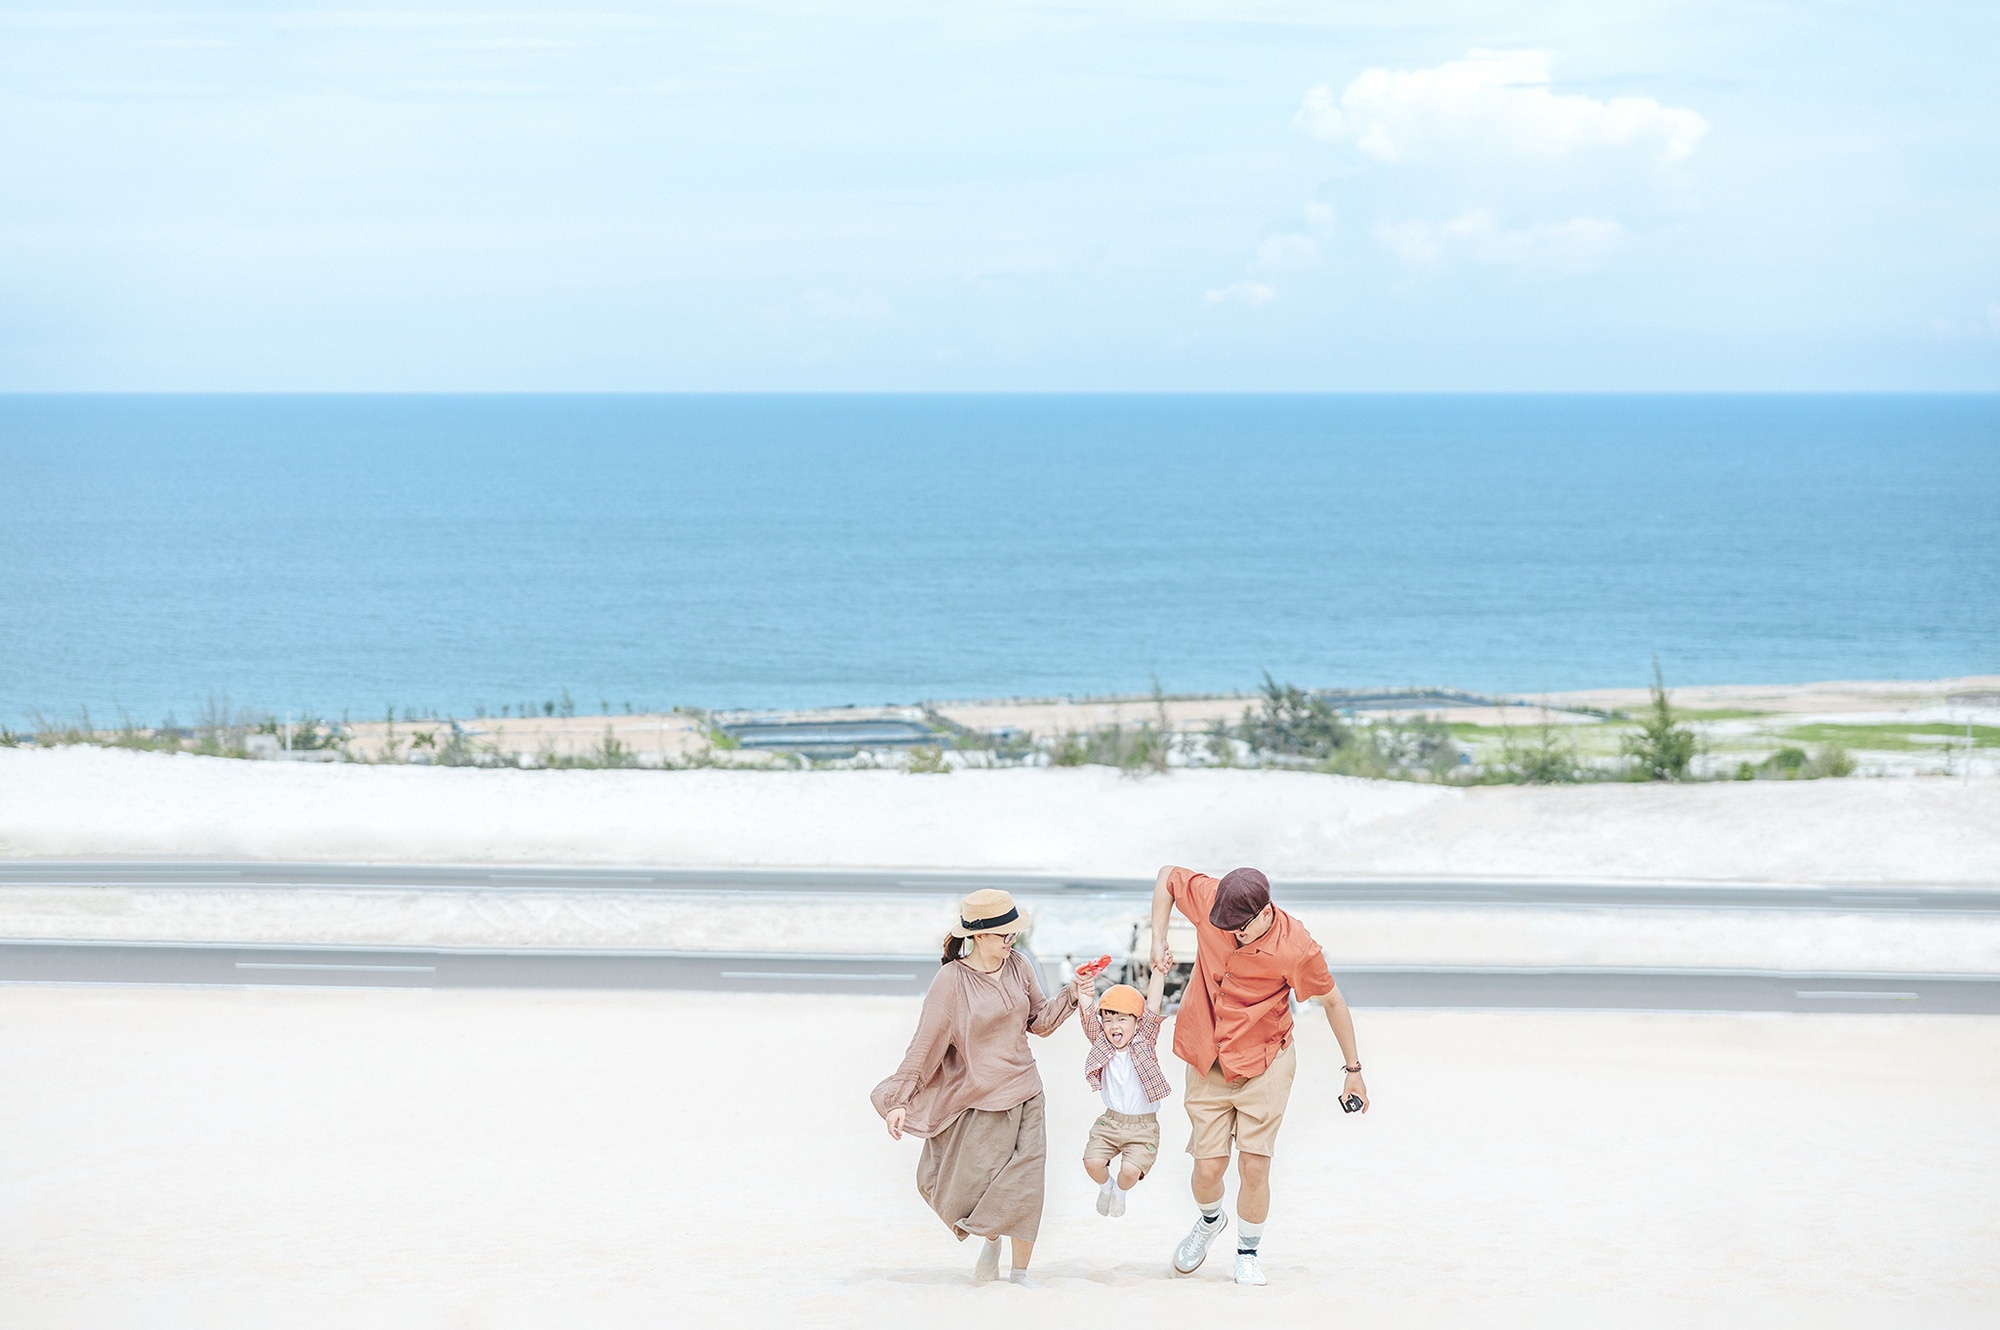 Bình Thuận xanh ngắt trong ảnh du lịch gia đình 3 người - Ảnh 12.